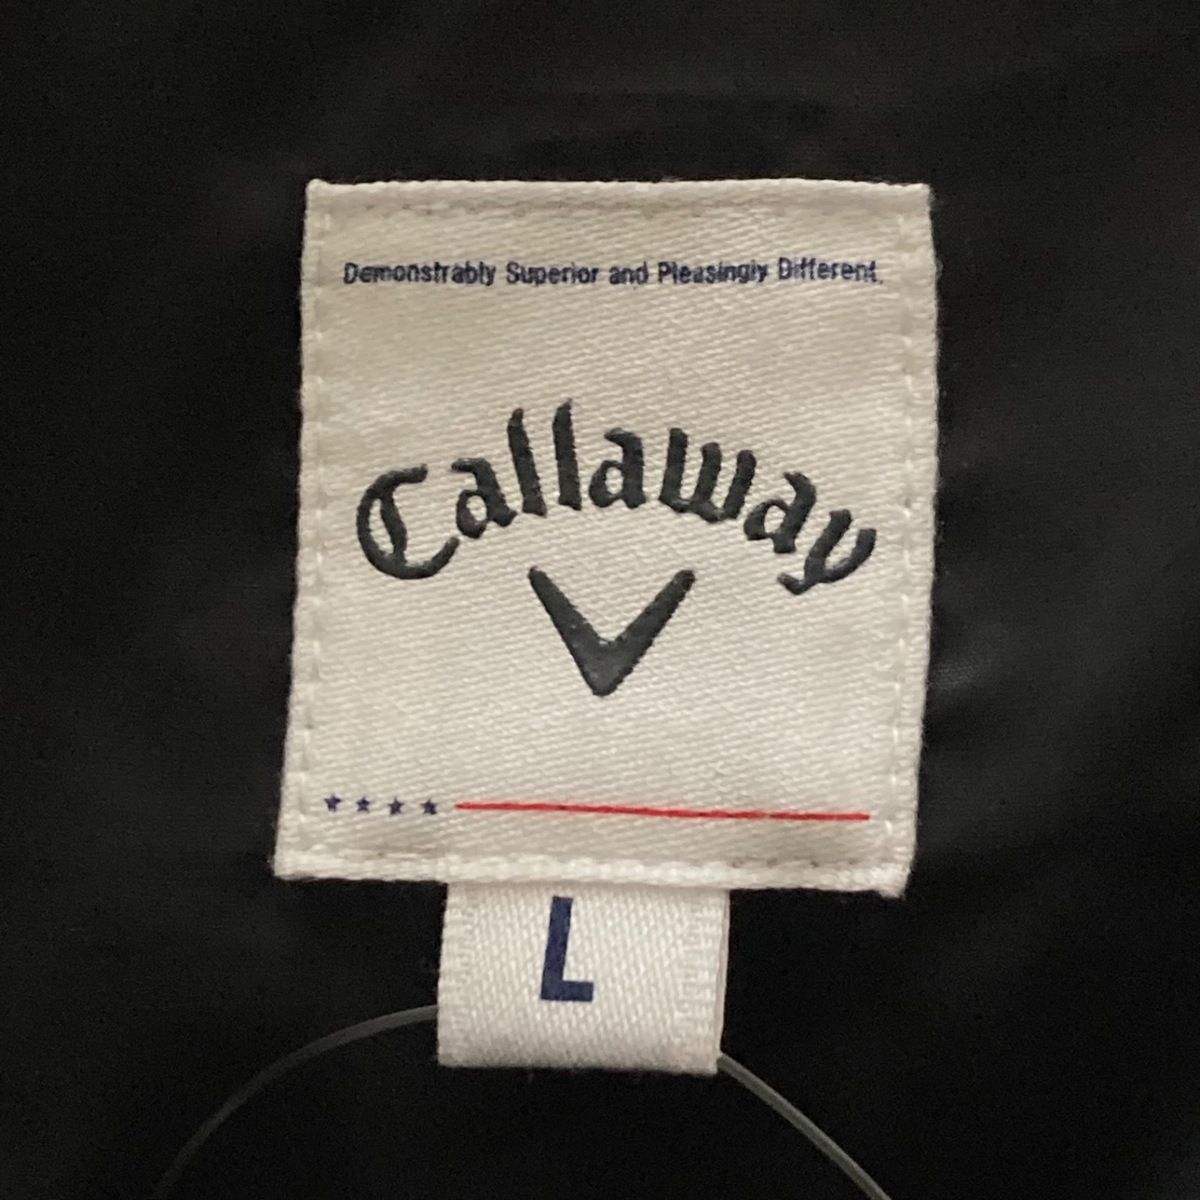 CALLAWAY(キャロウェイ) ダウンジャケット サイズL メンズ - ダークグレー 長袖/ジップアップ/冬